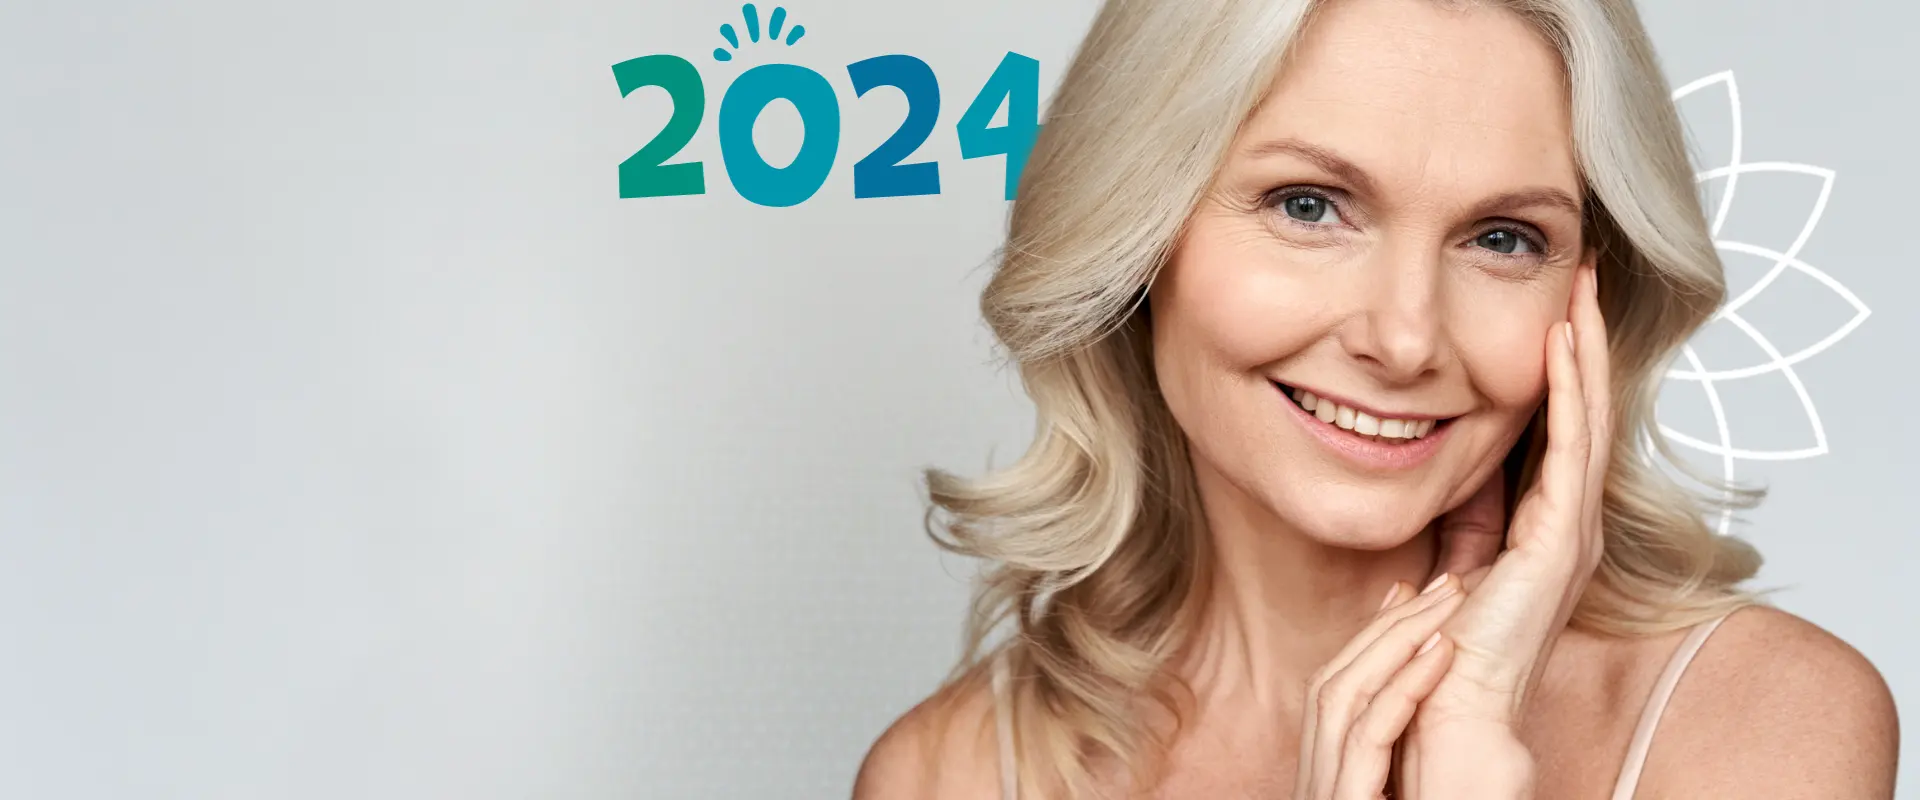 Tendencias en Rejuvenecimiento Facial: Lo Que Viene para el 2024